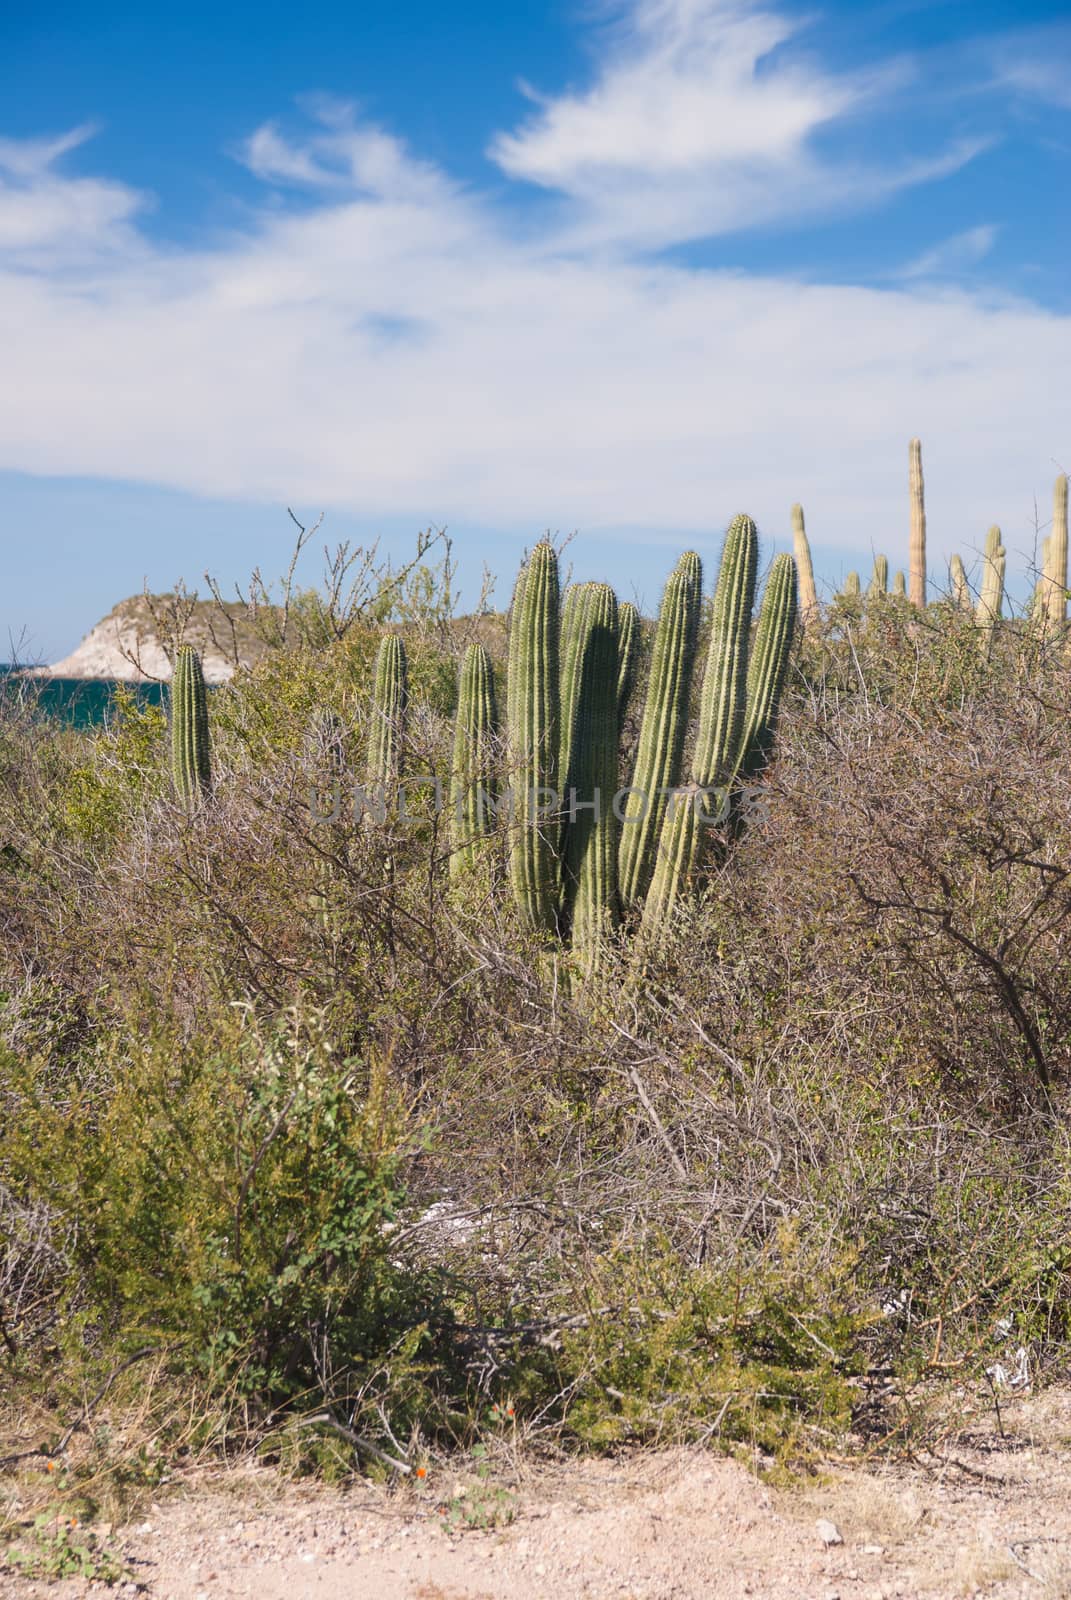 Organpipe Cactus in coastal Sonora desert Mexico by emattil